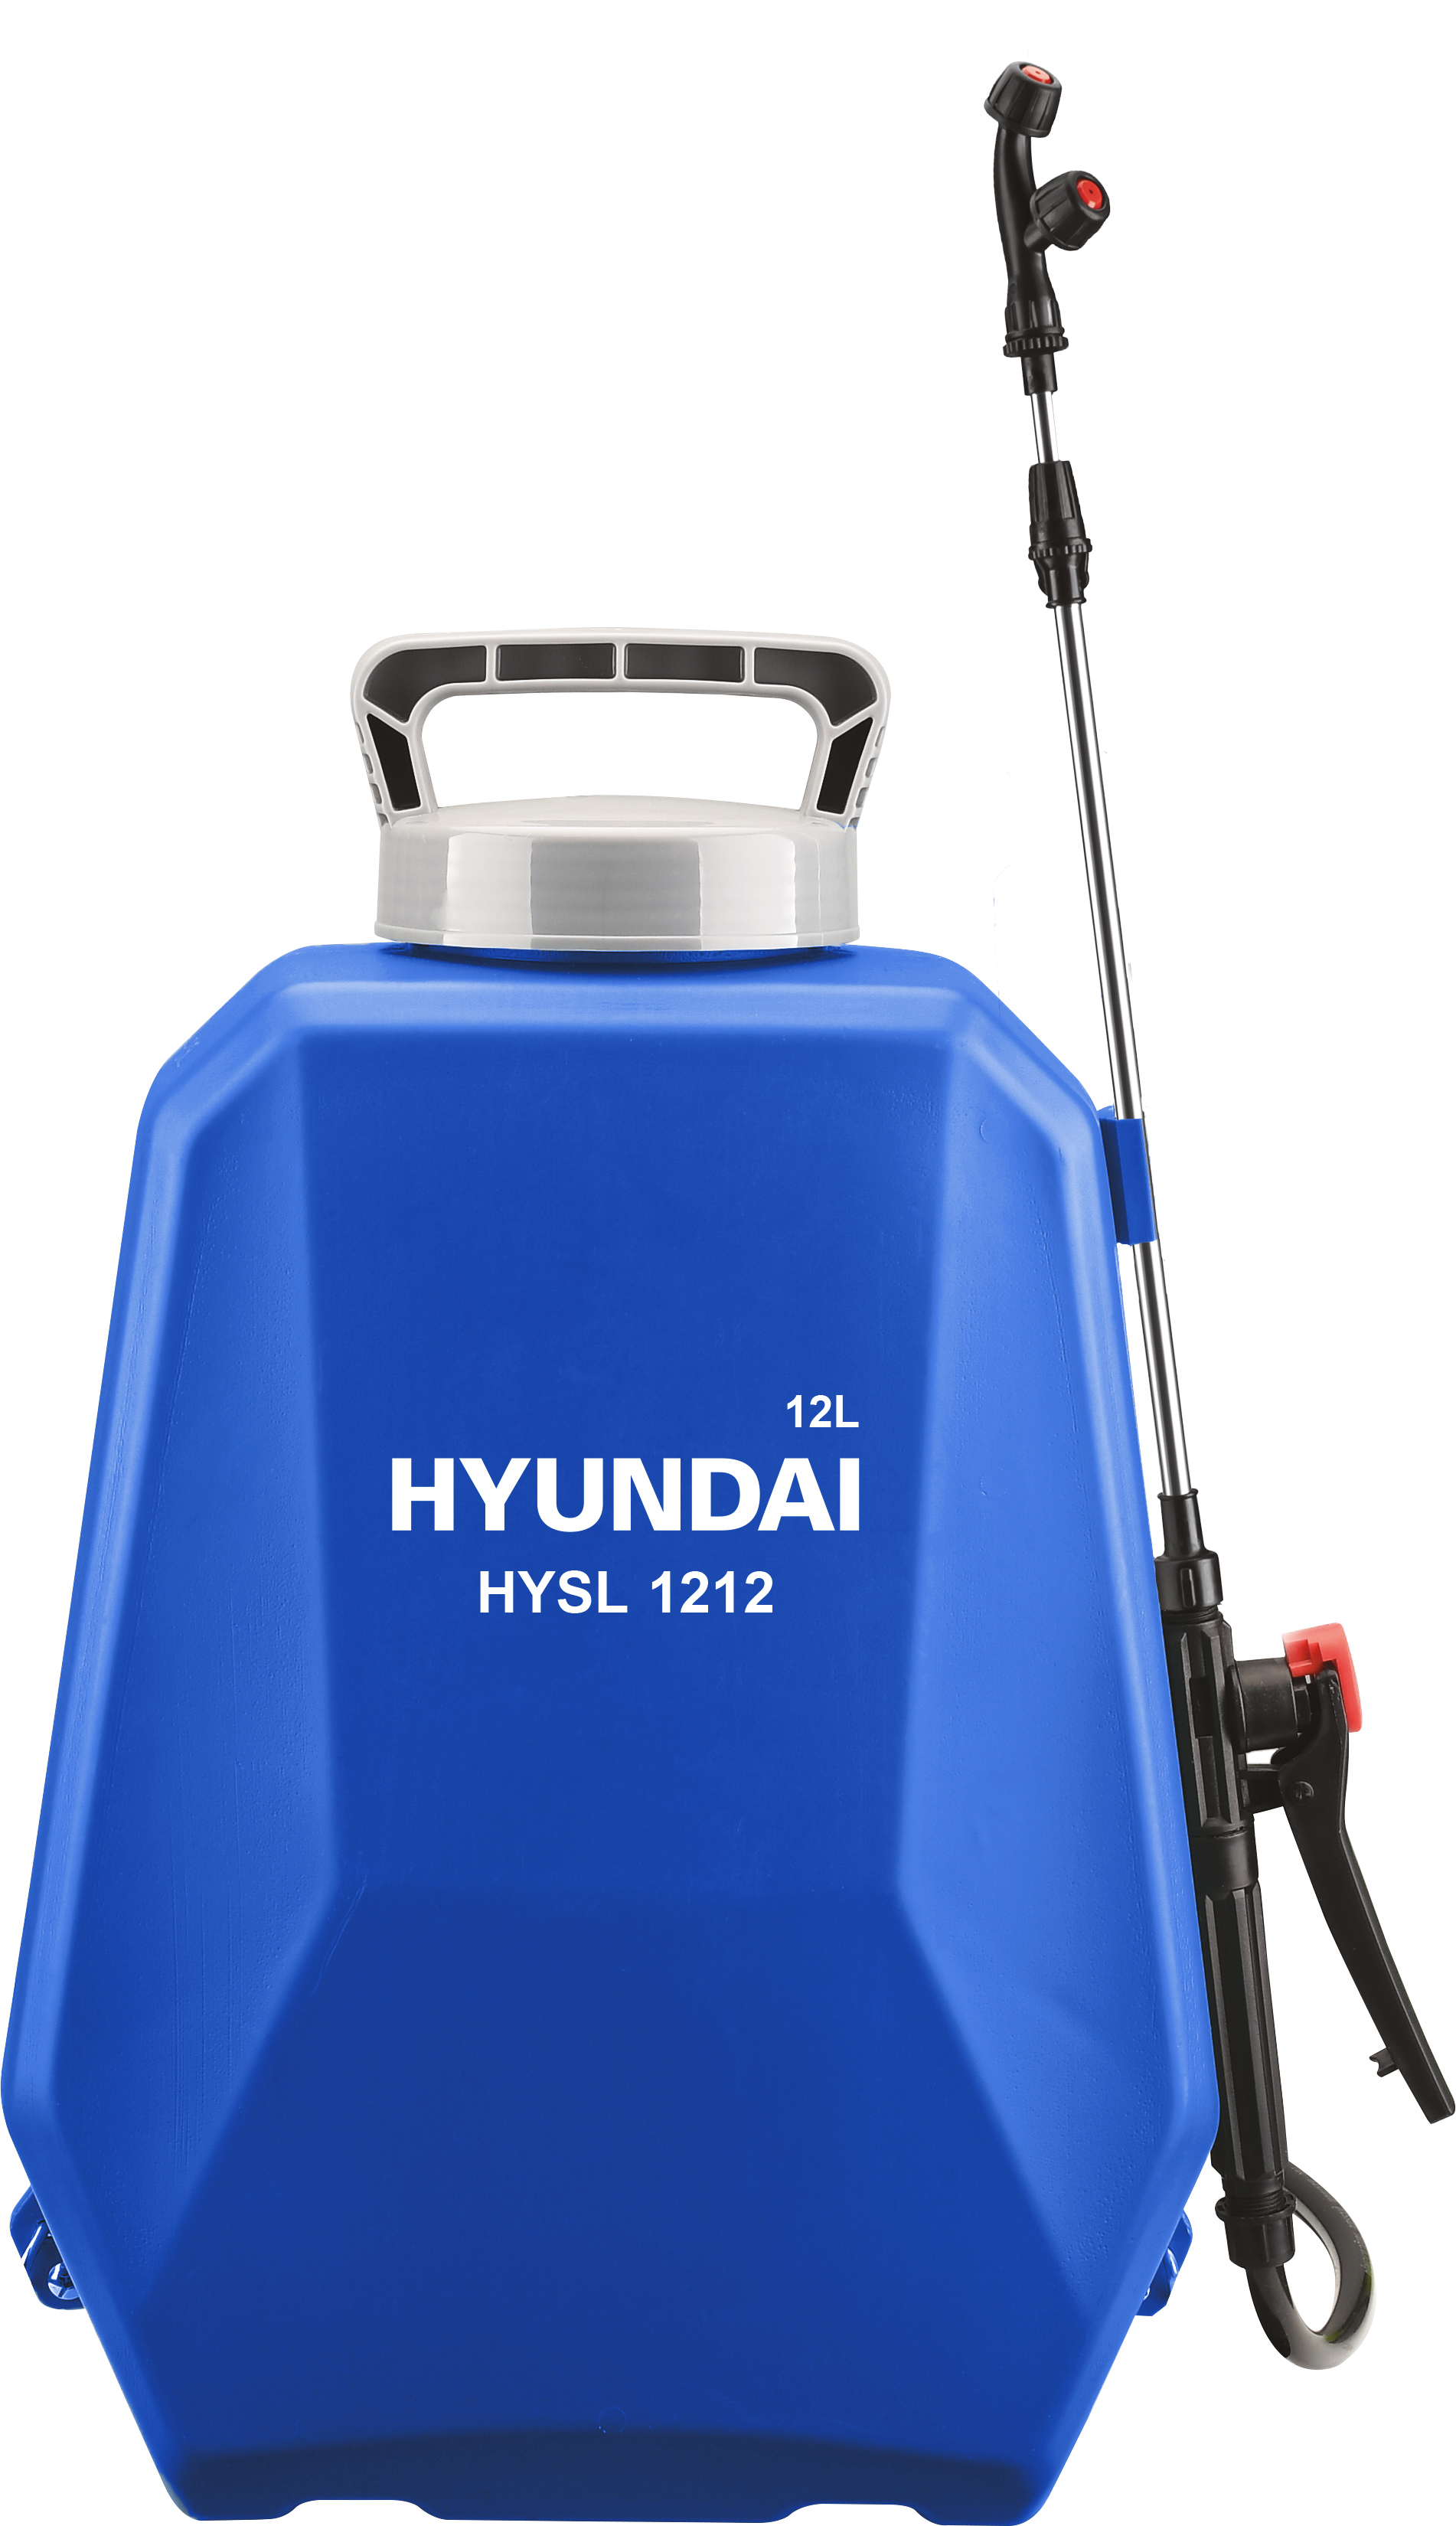 Аккумуляторный опрыскиватель Hyundai HYSL 1212 аккумуляторный опрыскиватель huter sp 12ac 70 13 28